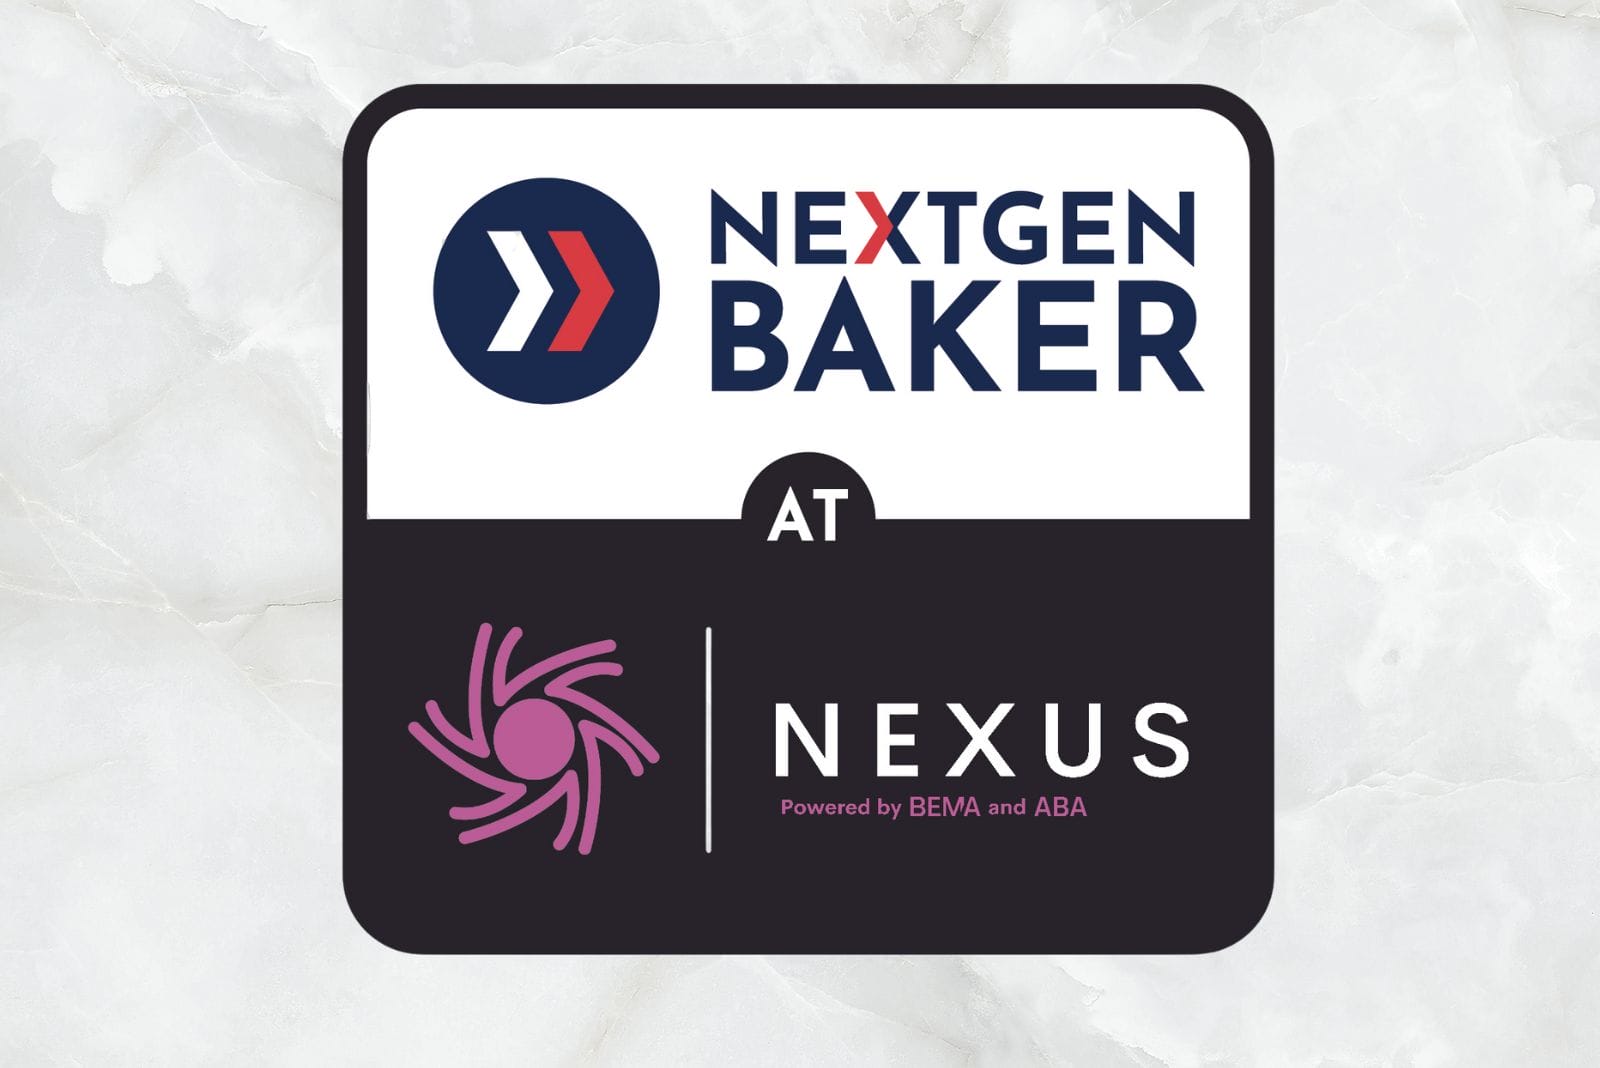 Next Gen Baker Nexus with logos